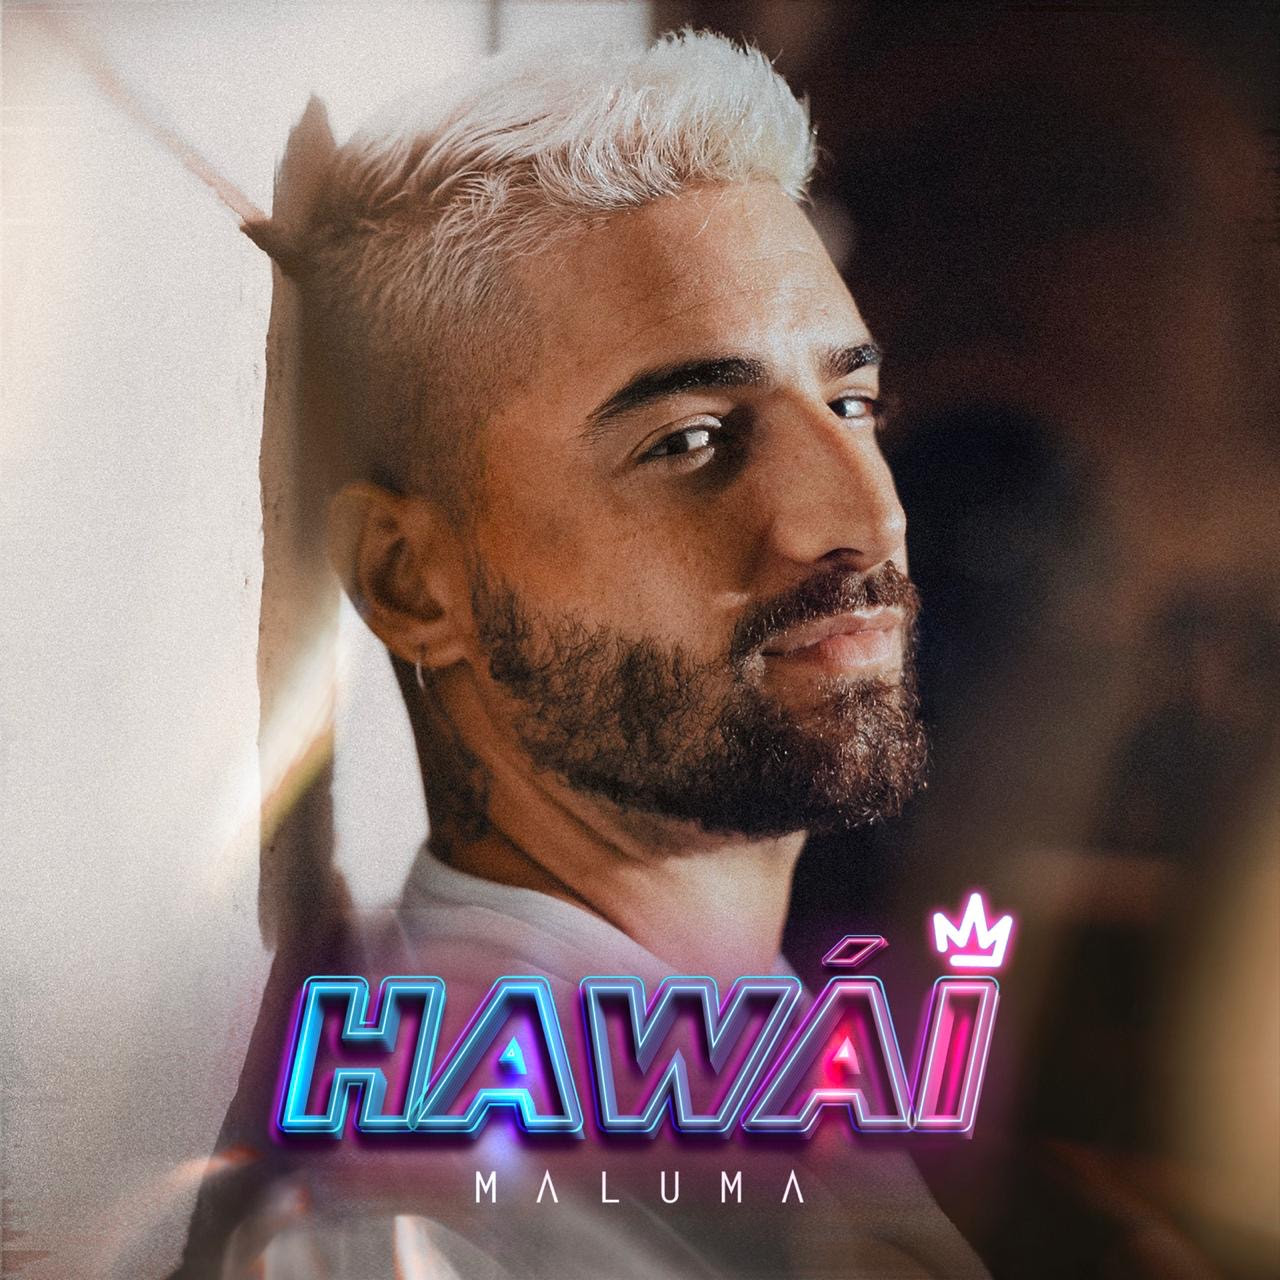 MALUMA, y su nuevo sencillo “HAWÁI”, junto con su videoclip.